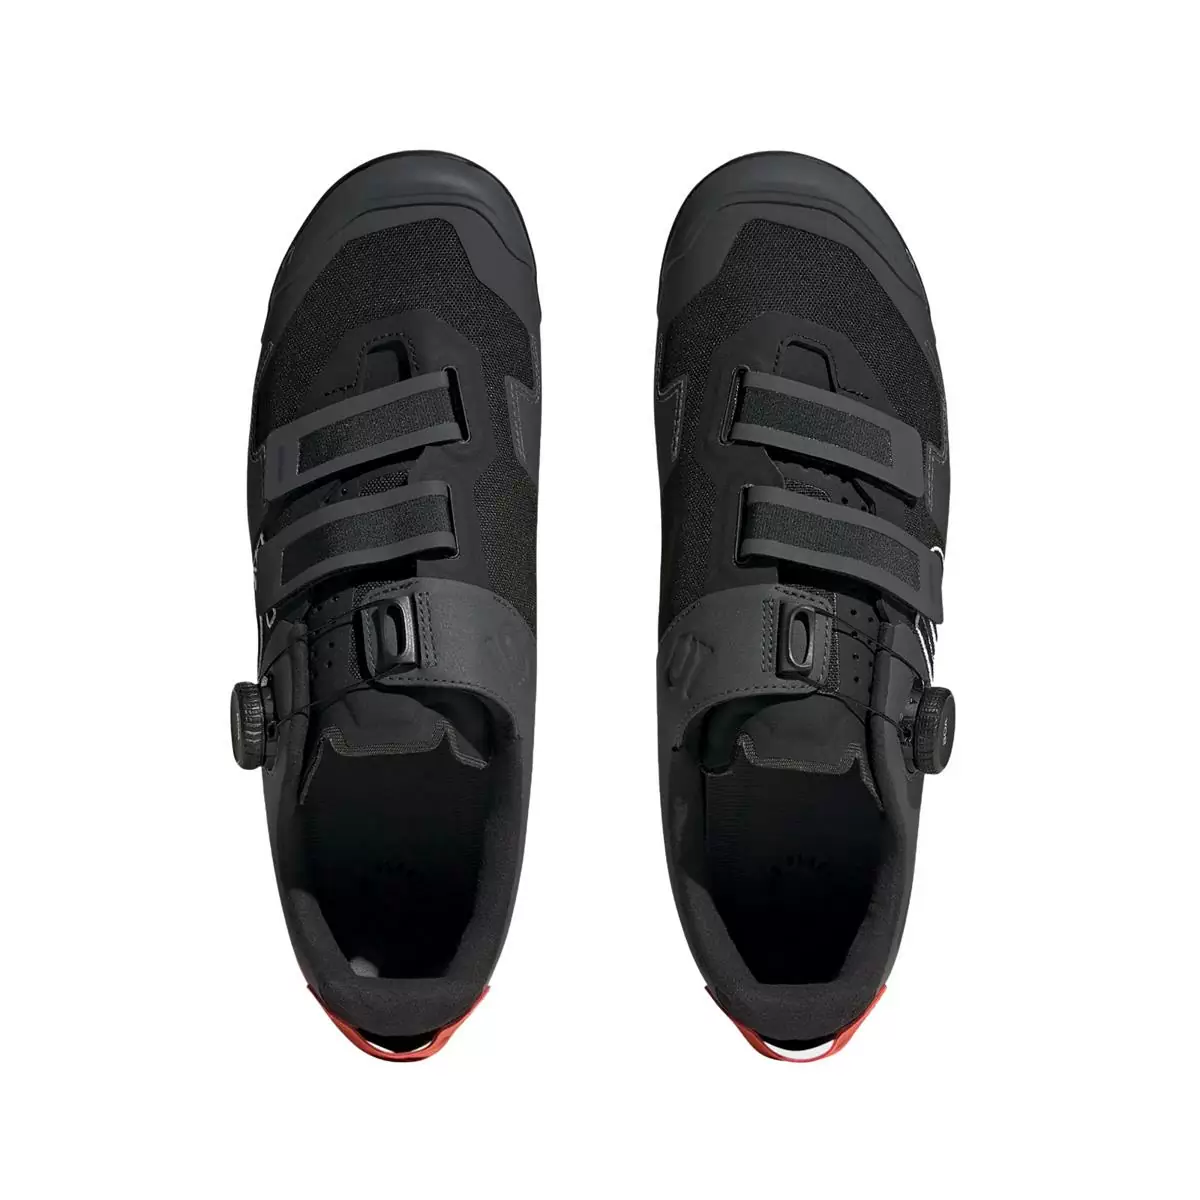 Clip 5.10 Kestrel Boa MTB Shoes Black/Orange Size 42 #3